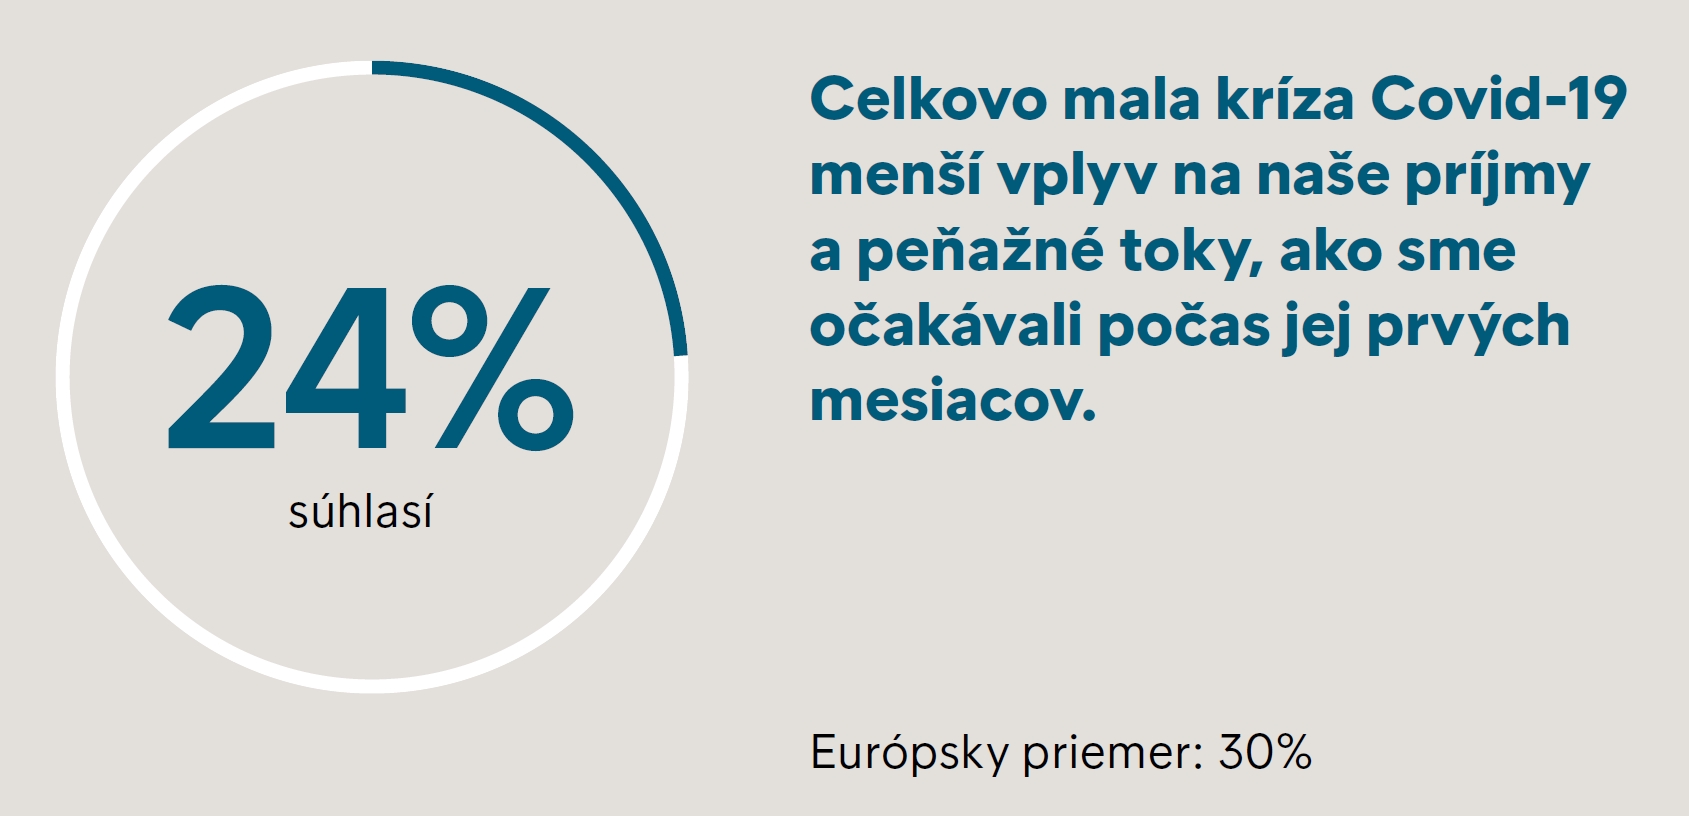 Požiadali sme slovenských respondentov o vyjadrenie súhlasu s nasledovnými tvrdeniami.